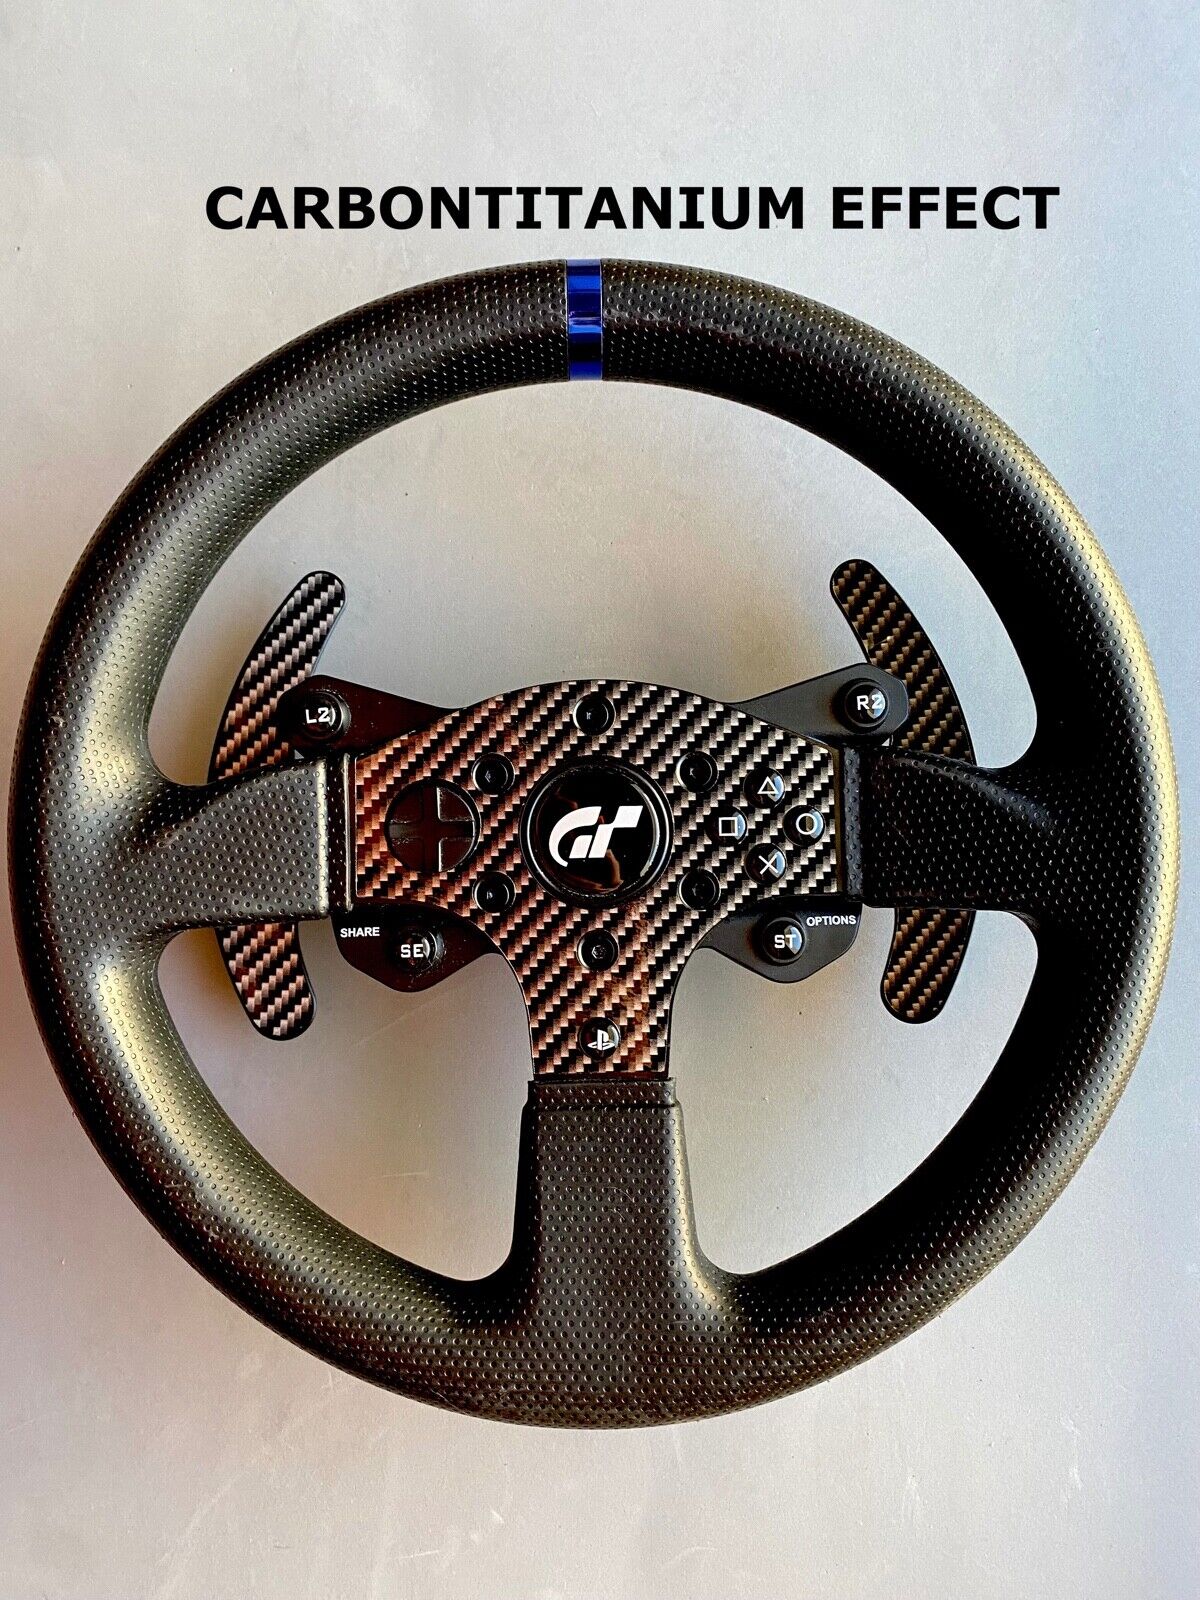 Carbon Film